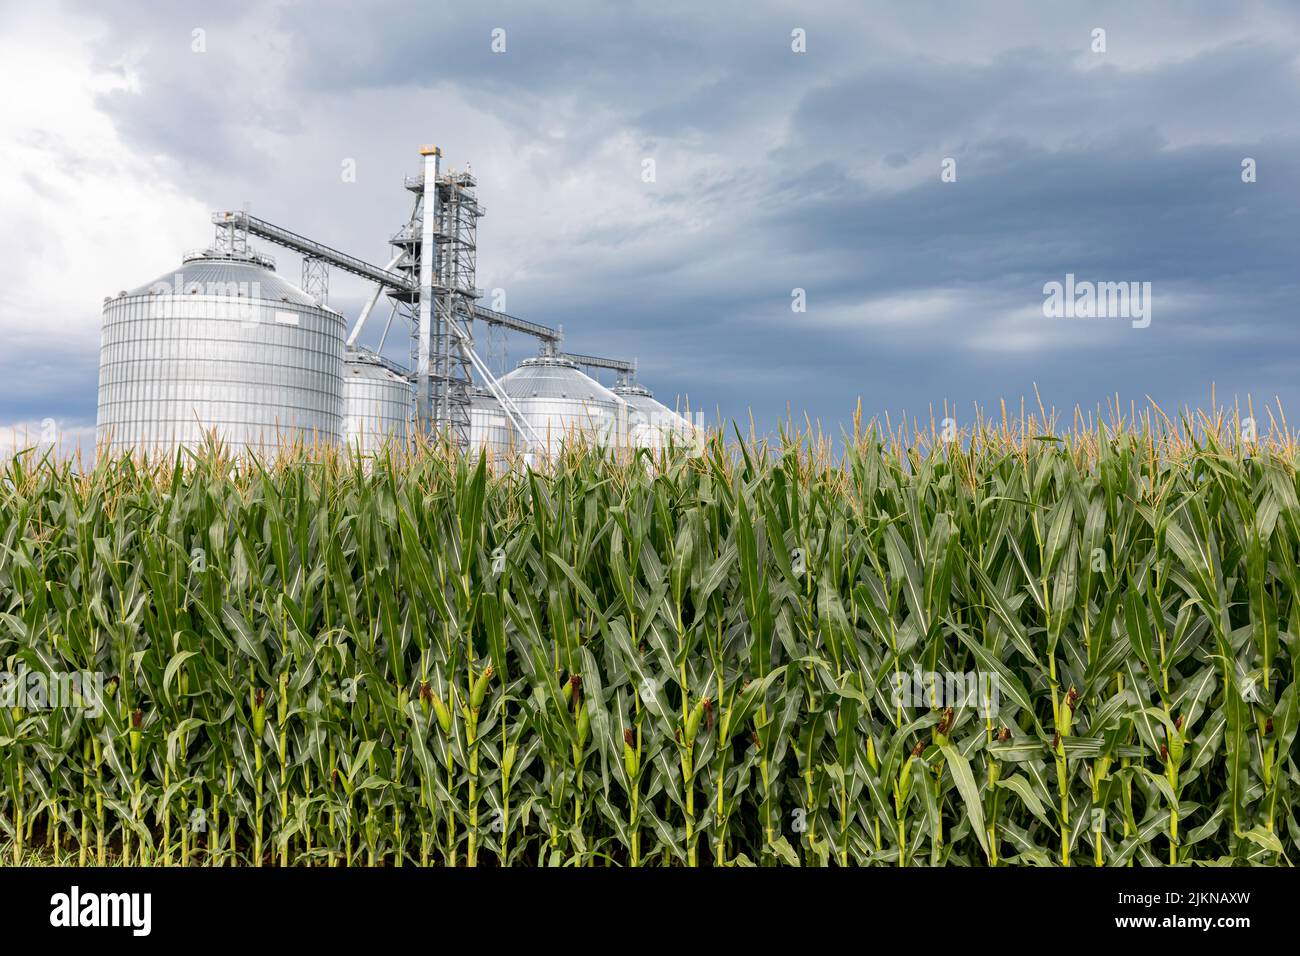 Campo de maíz en verano con elevador de almacenamiento de grano en el fondo y nubes de tormenta en el cielo. Cultivo de maíz, clima y concepto de agricultura. Foto de stock